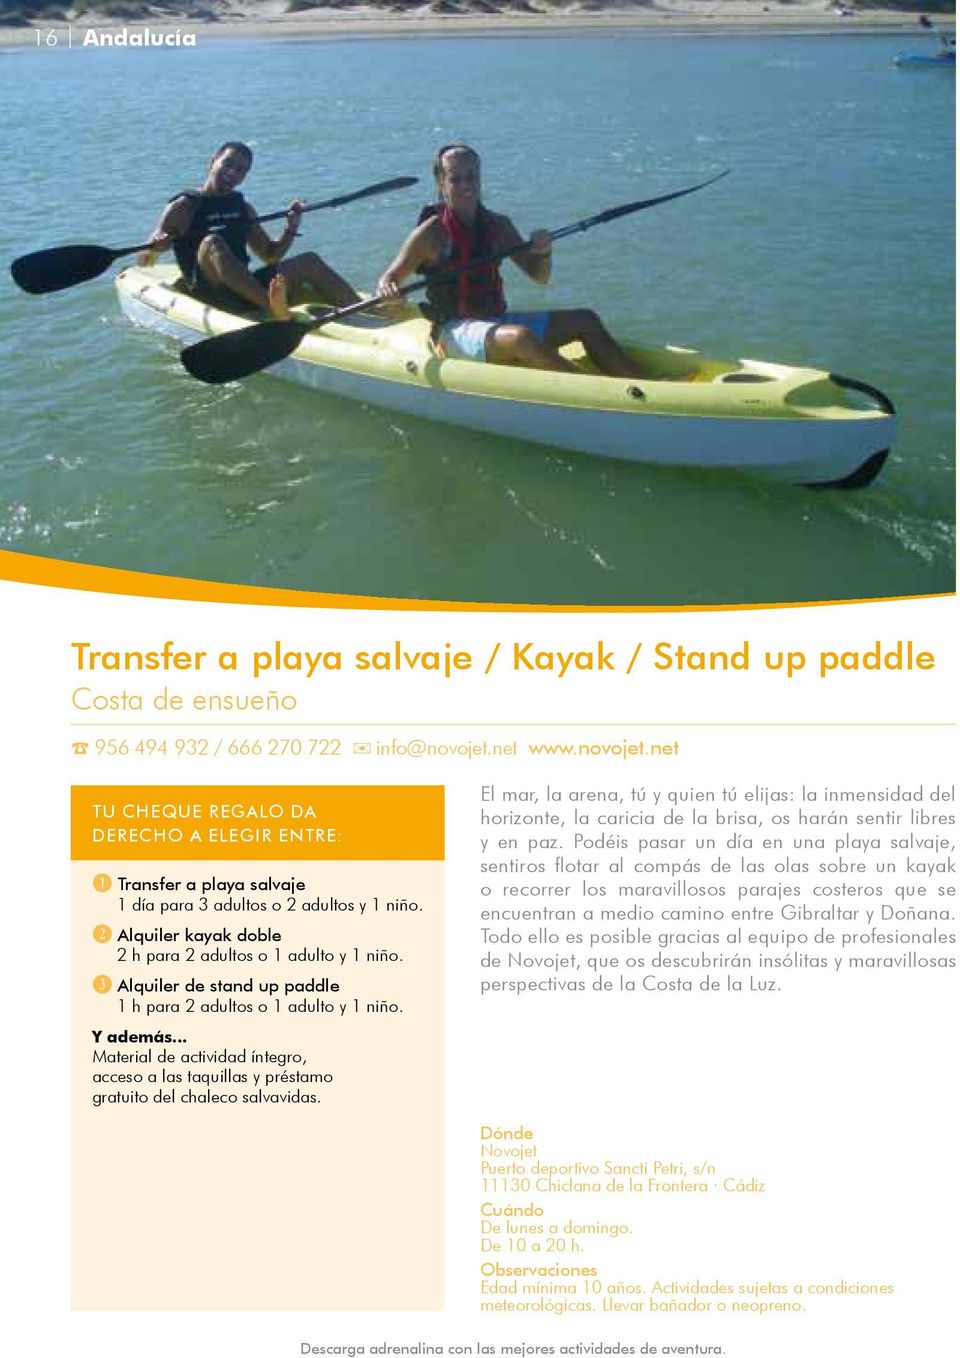 D Alquiler de stand up paddle 1 h para 2 adultos o 1 adulto y 1 niño. Material de actividad íntegro, acceso a las taquillas y préstamo gratuito del chaleco salvavidas.